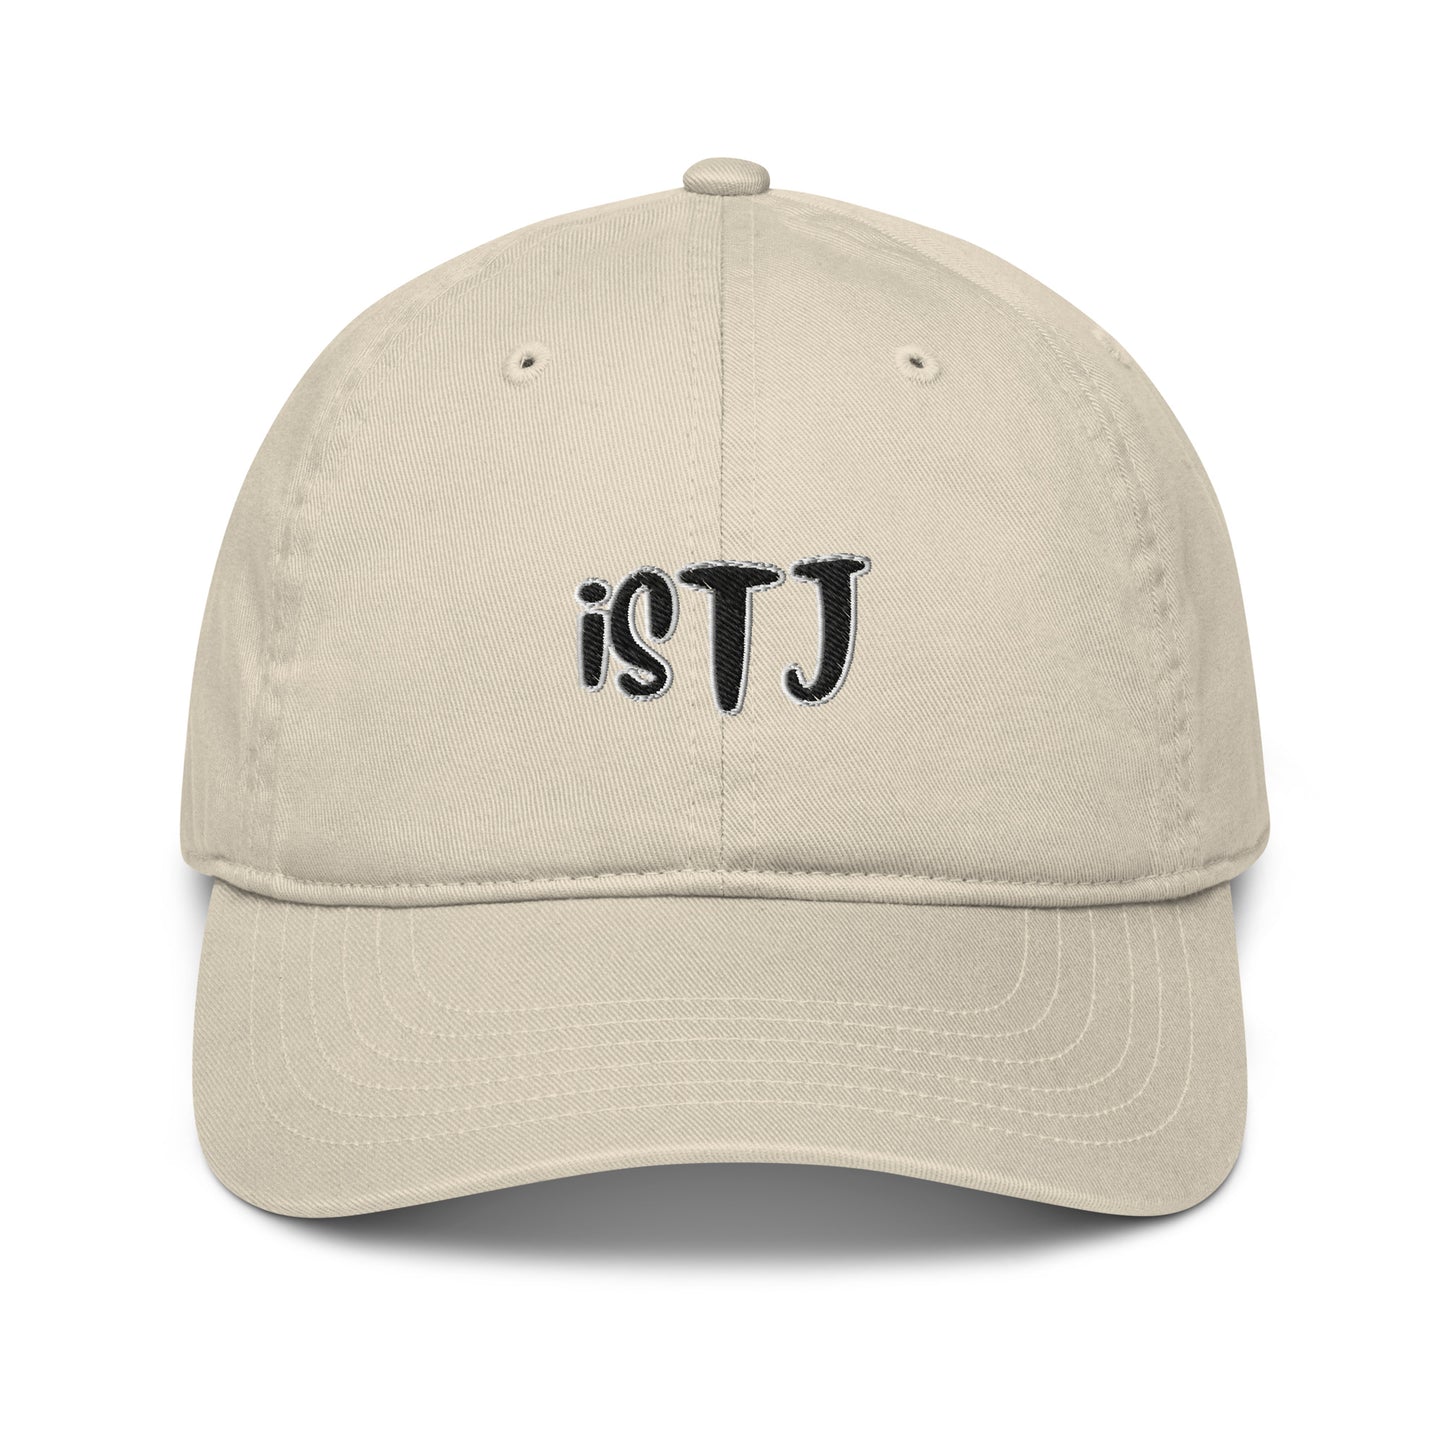 ISTJ MBTI Logo Organic dad hat